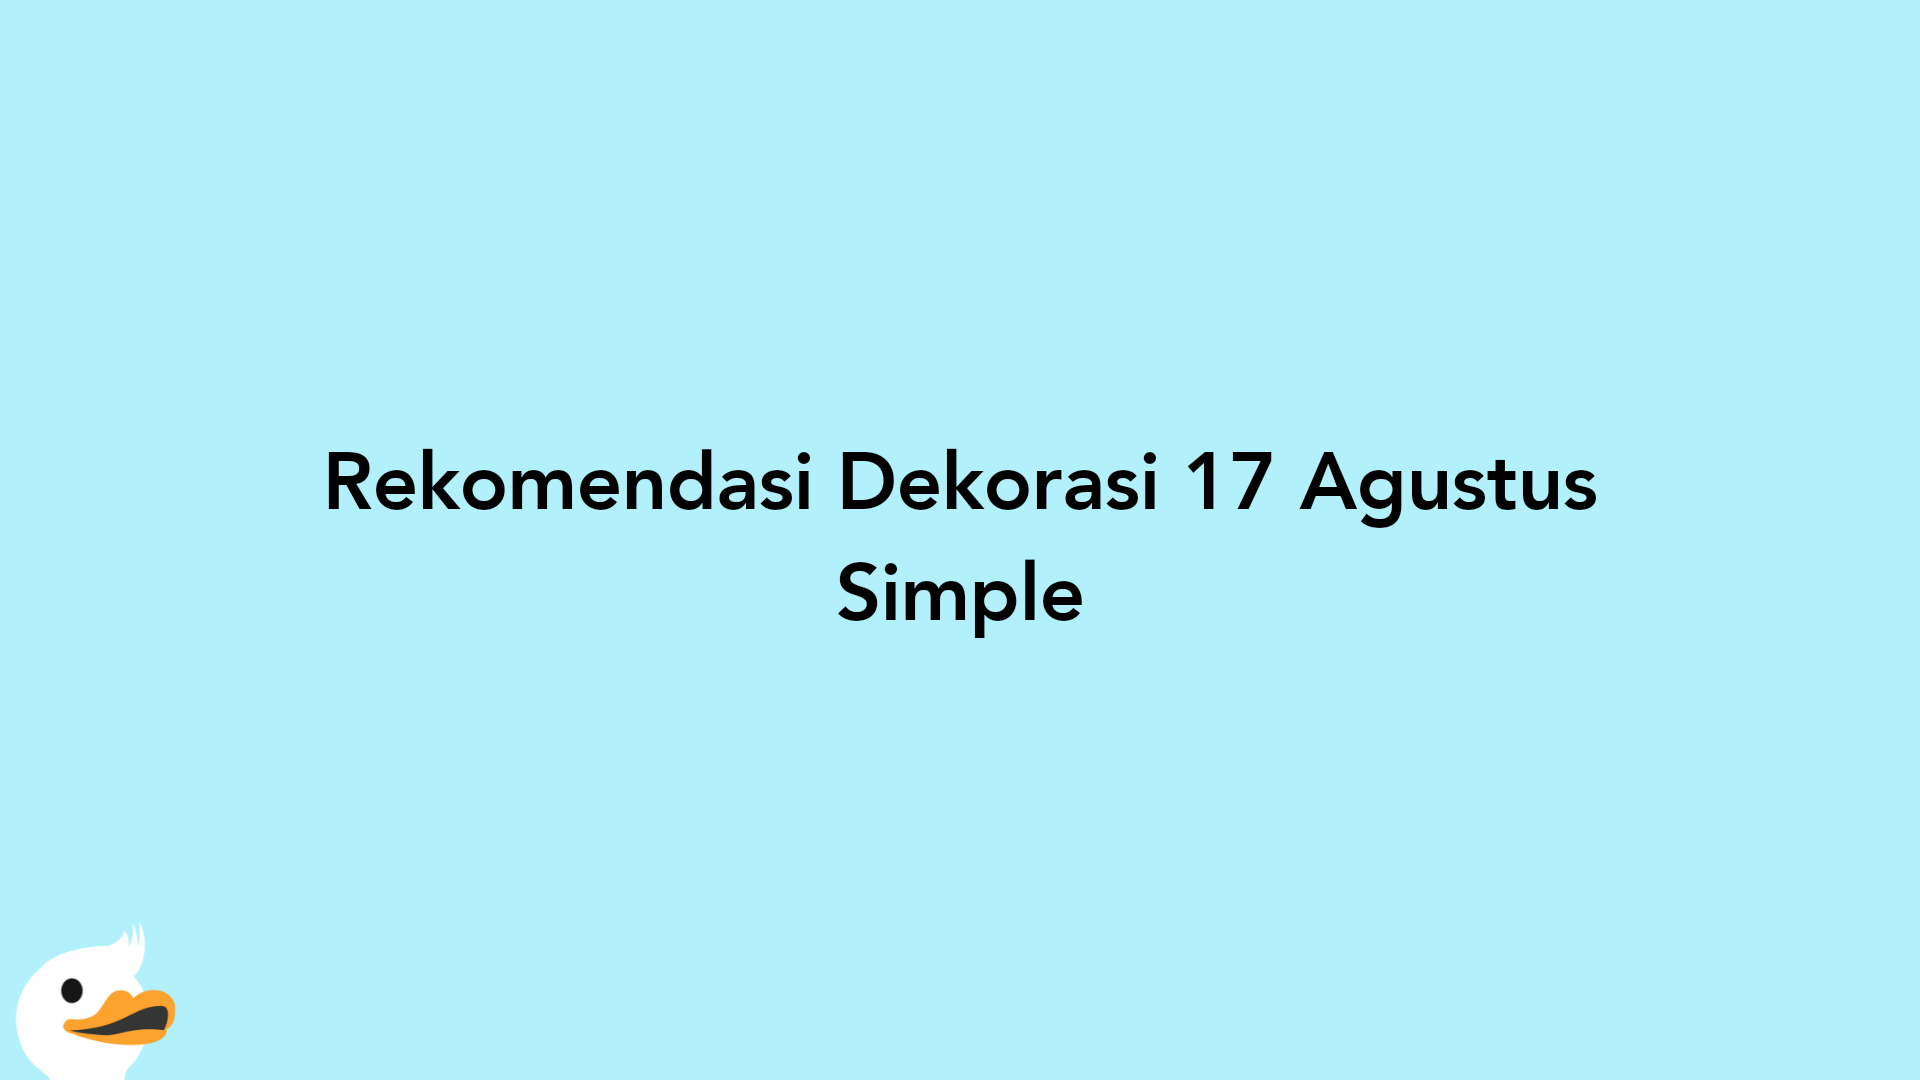 Rekomendasi Dekorasi 17 Agustus Simple